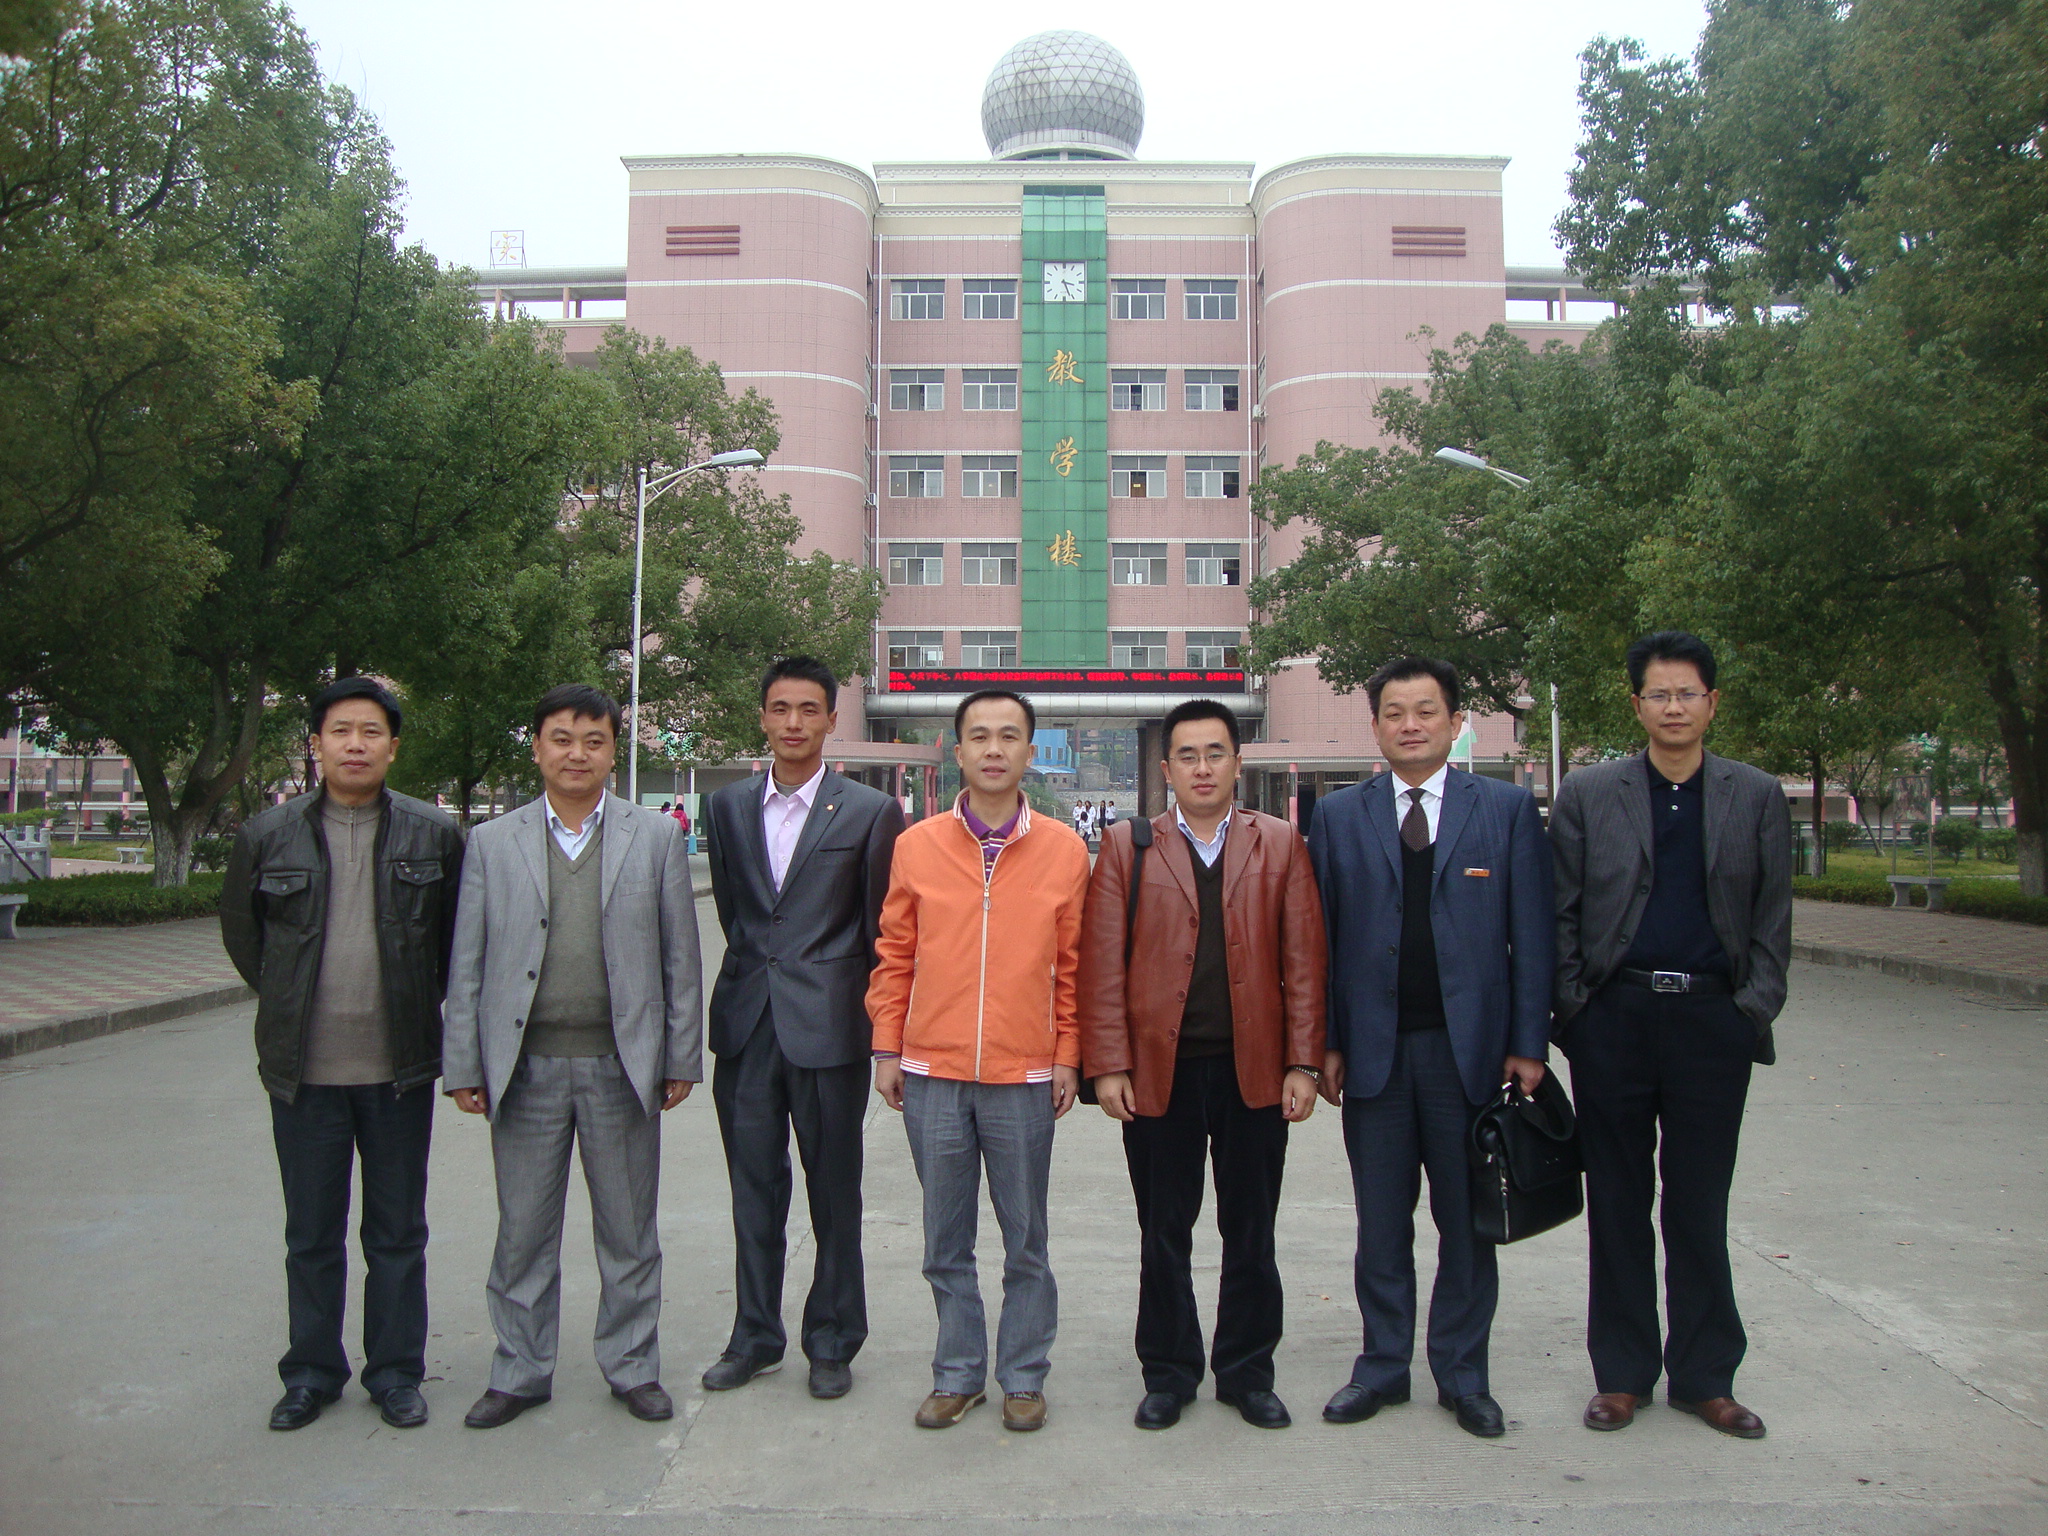 2010年3月日,上海倾技仪器仪表科技有限公司,溆浦县商务局一行五人